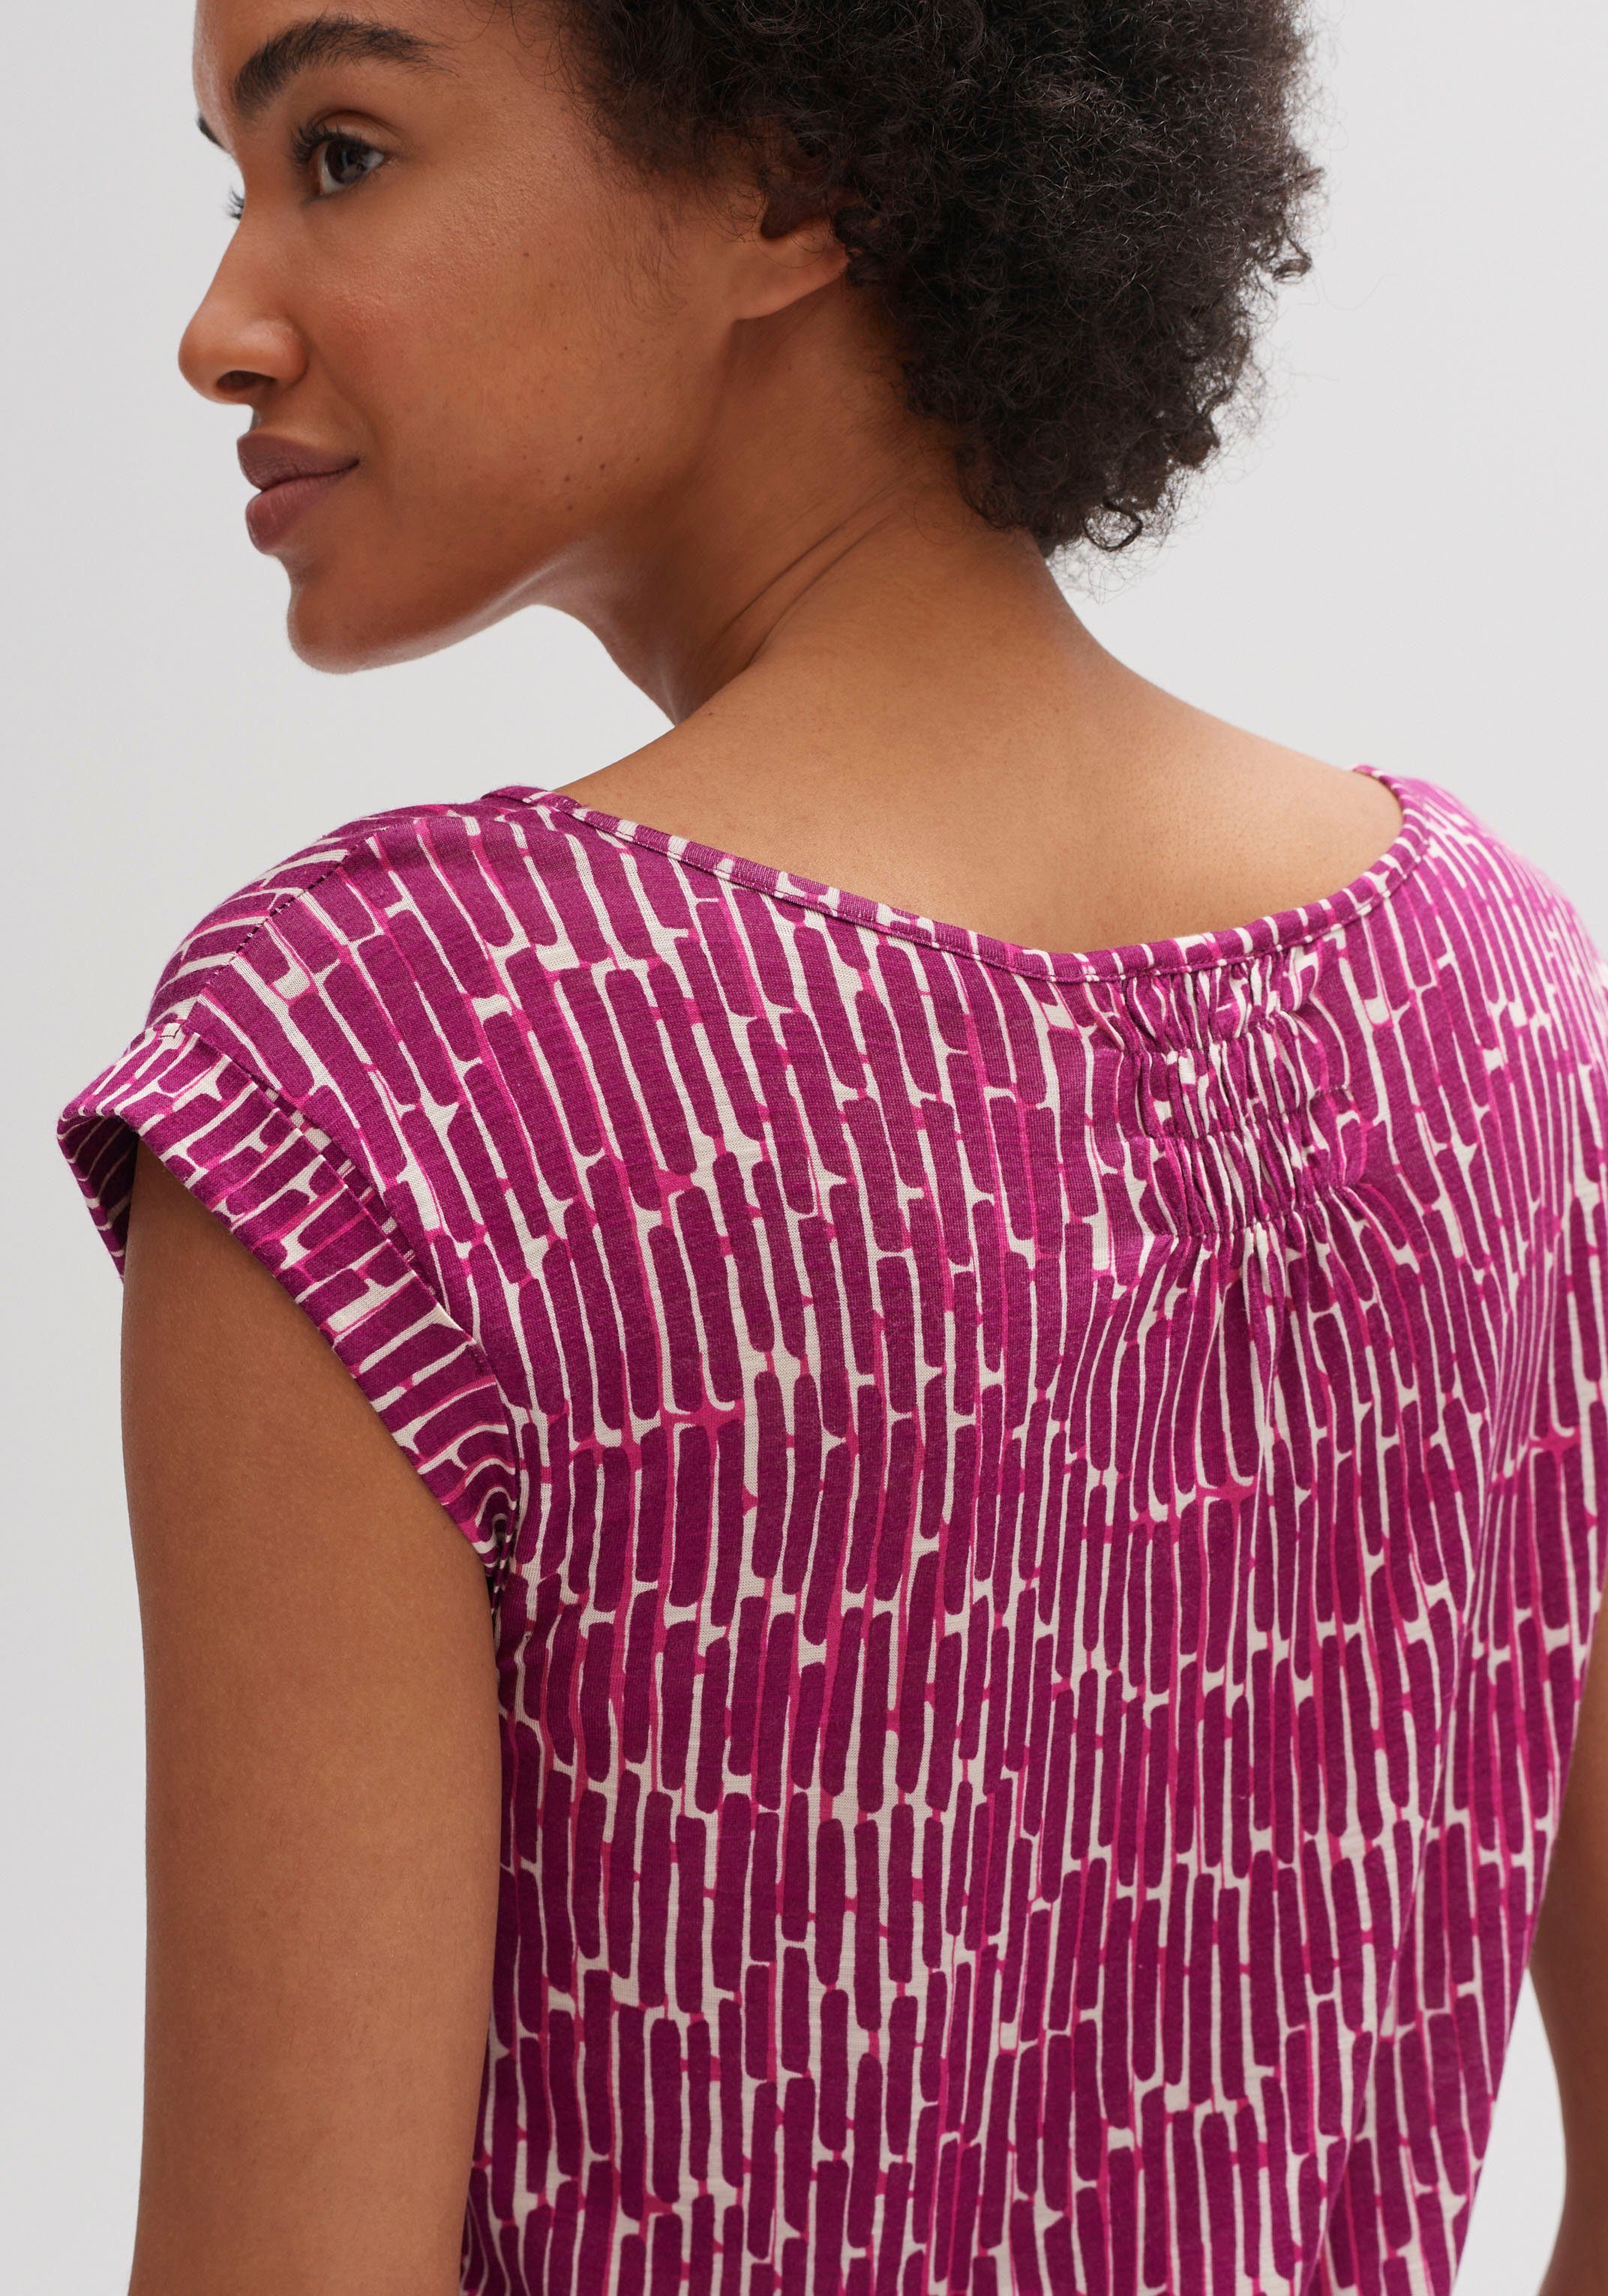 grafischem T-Shirt Muster OPUS Strolchi berry mit bright